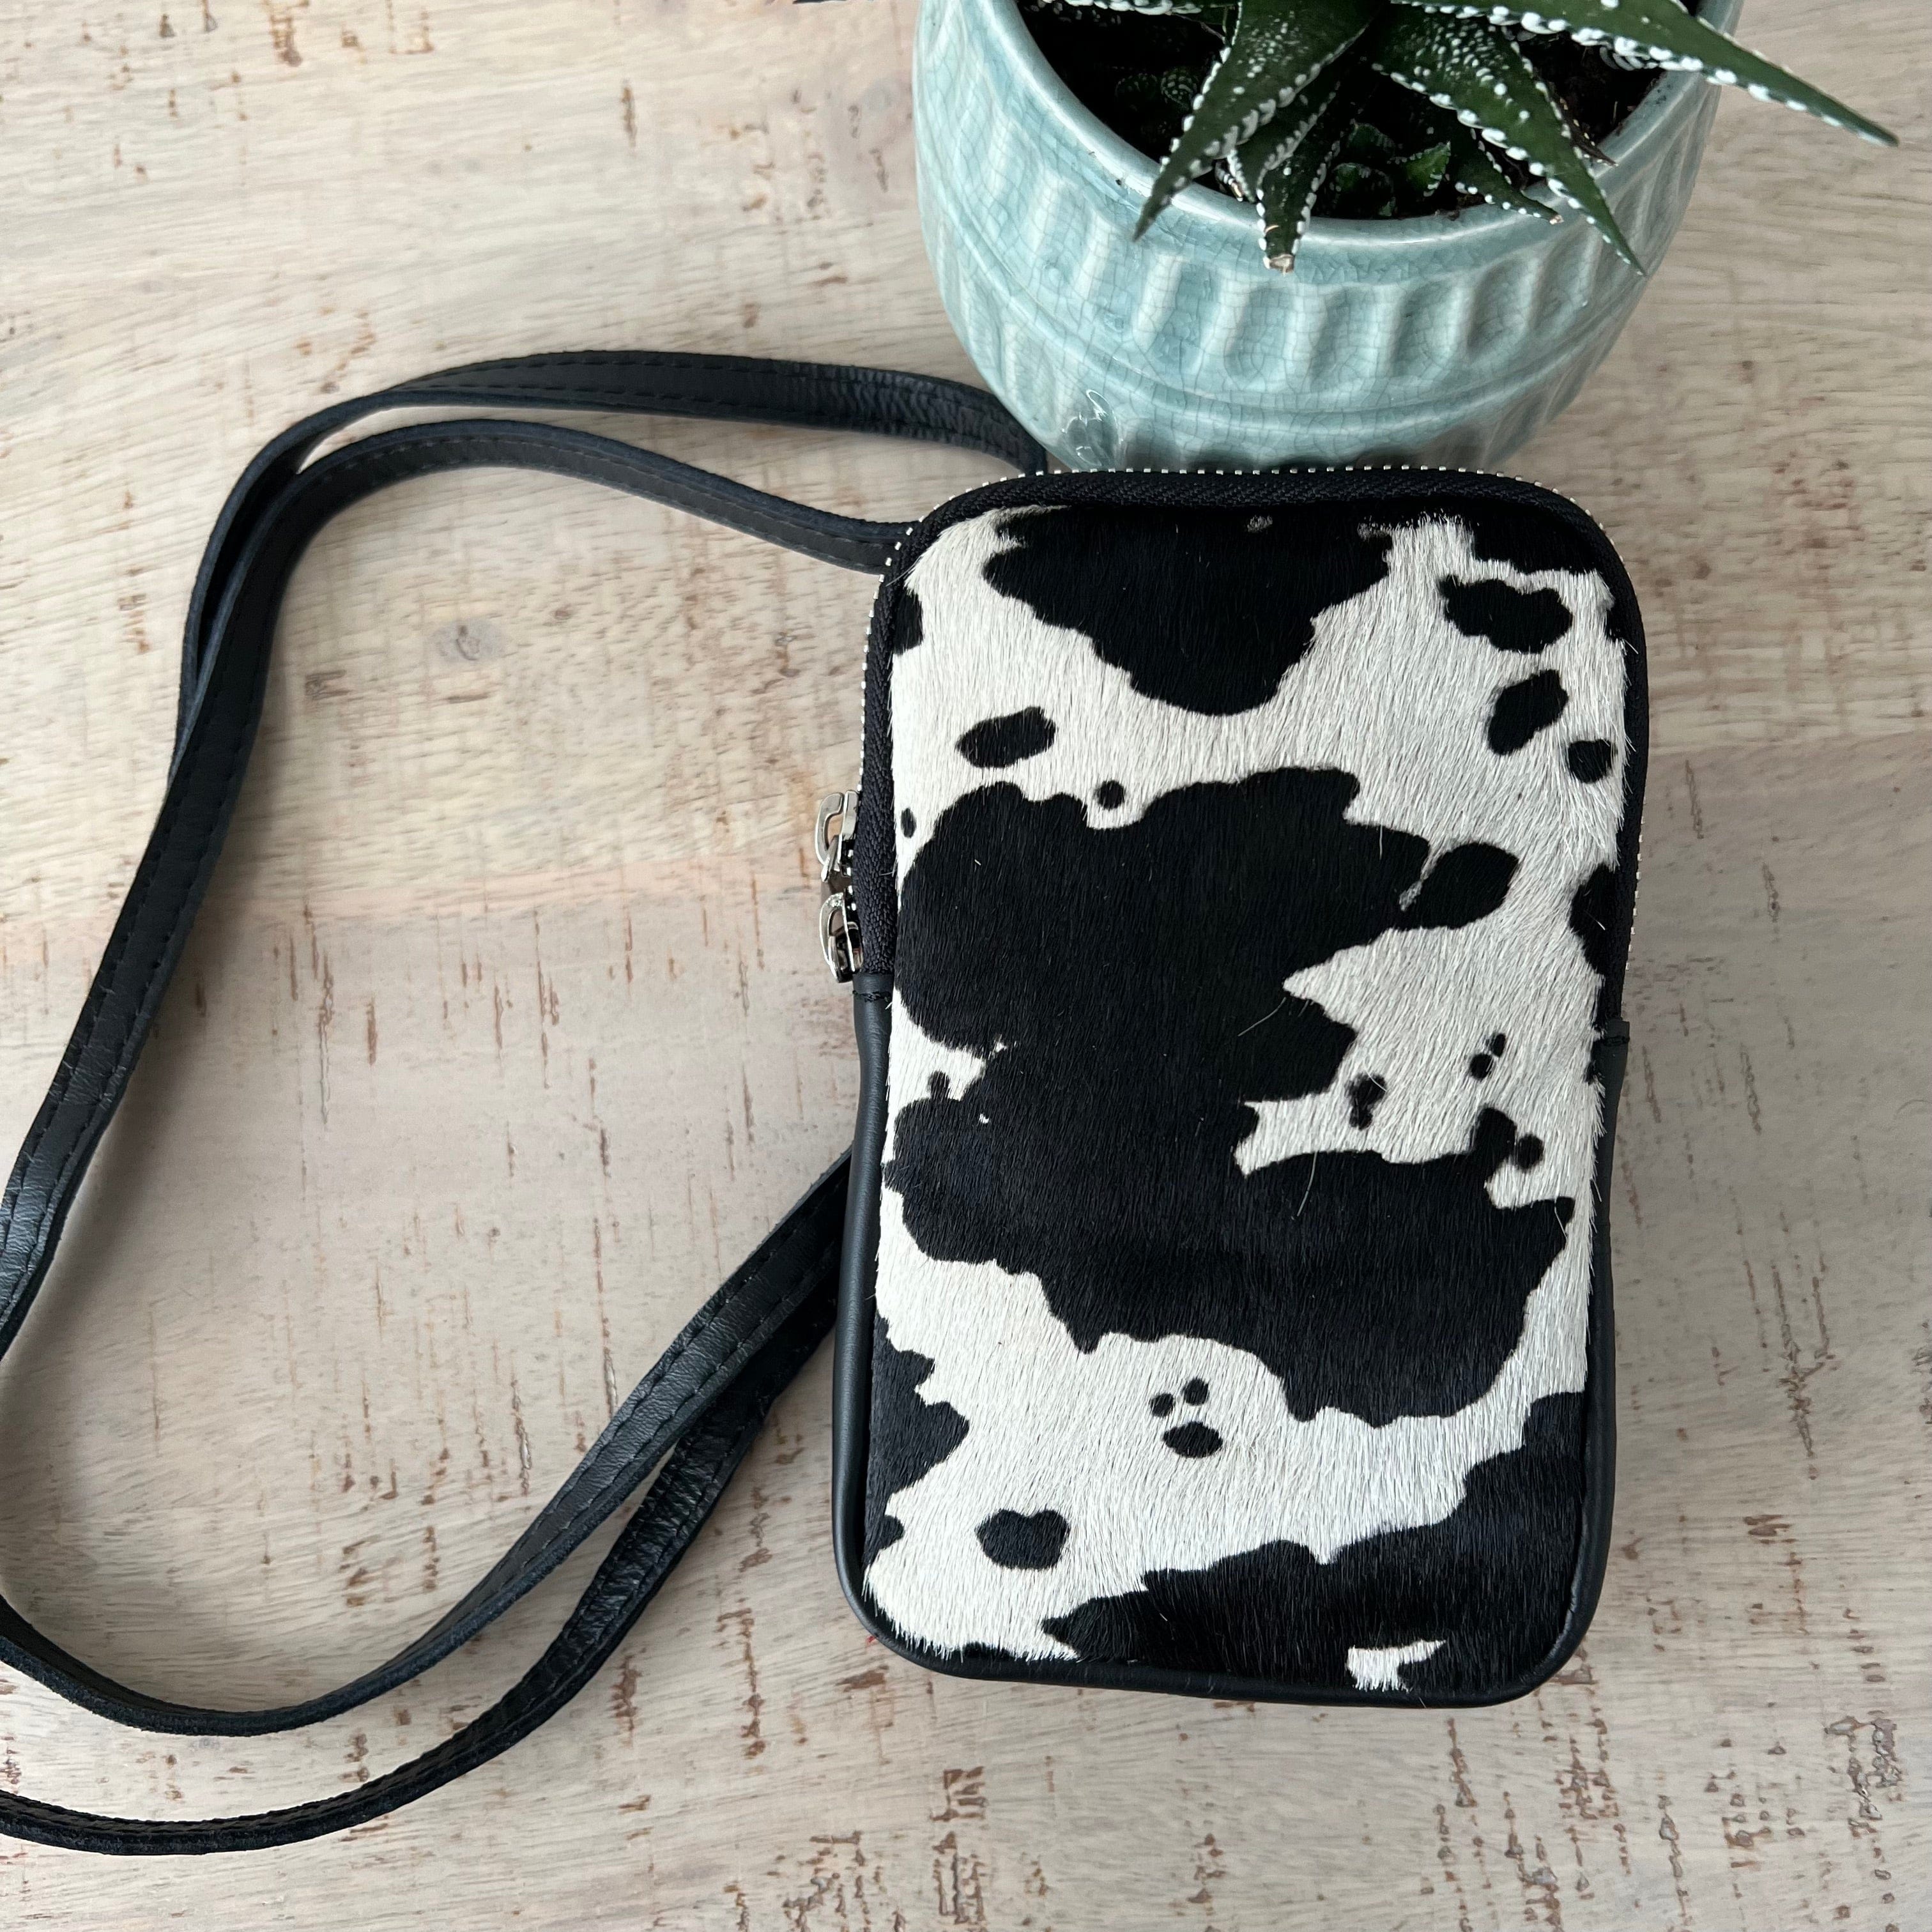 lusciousscarves Handbags Cow Print Italian leather pouch, mini crossbody bag